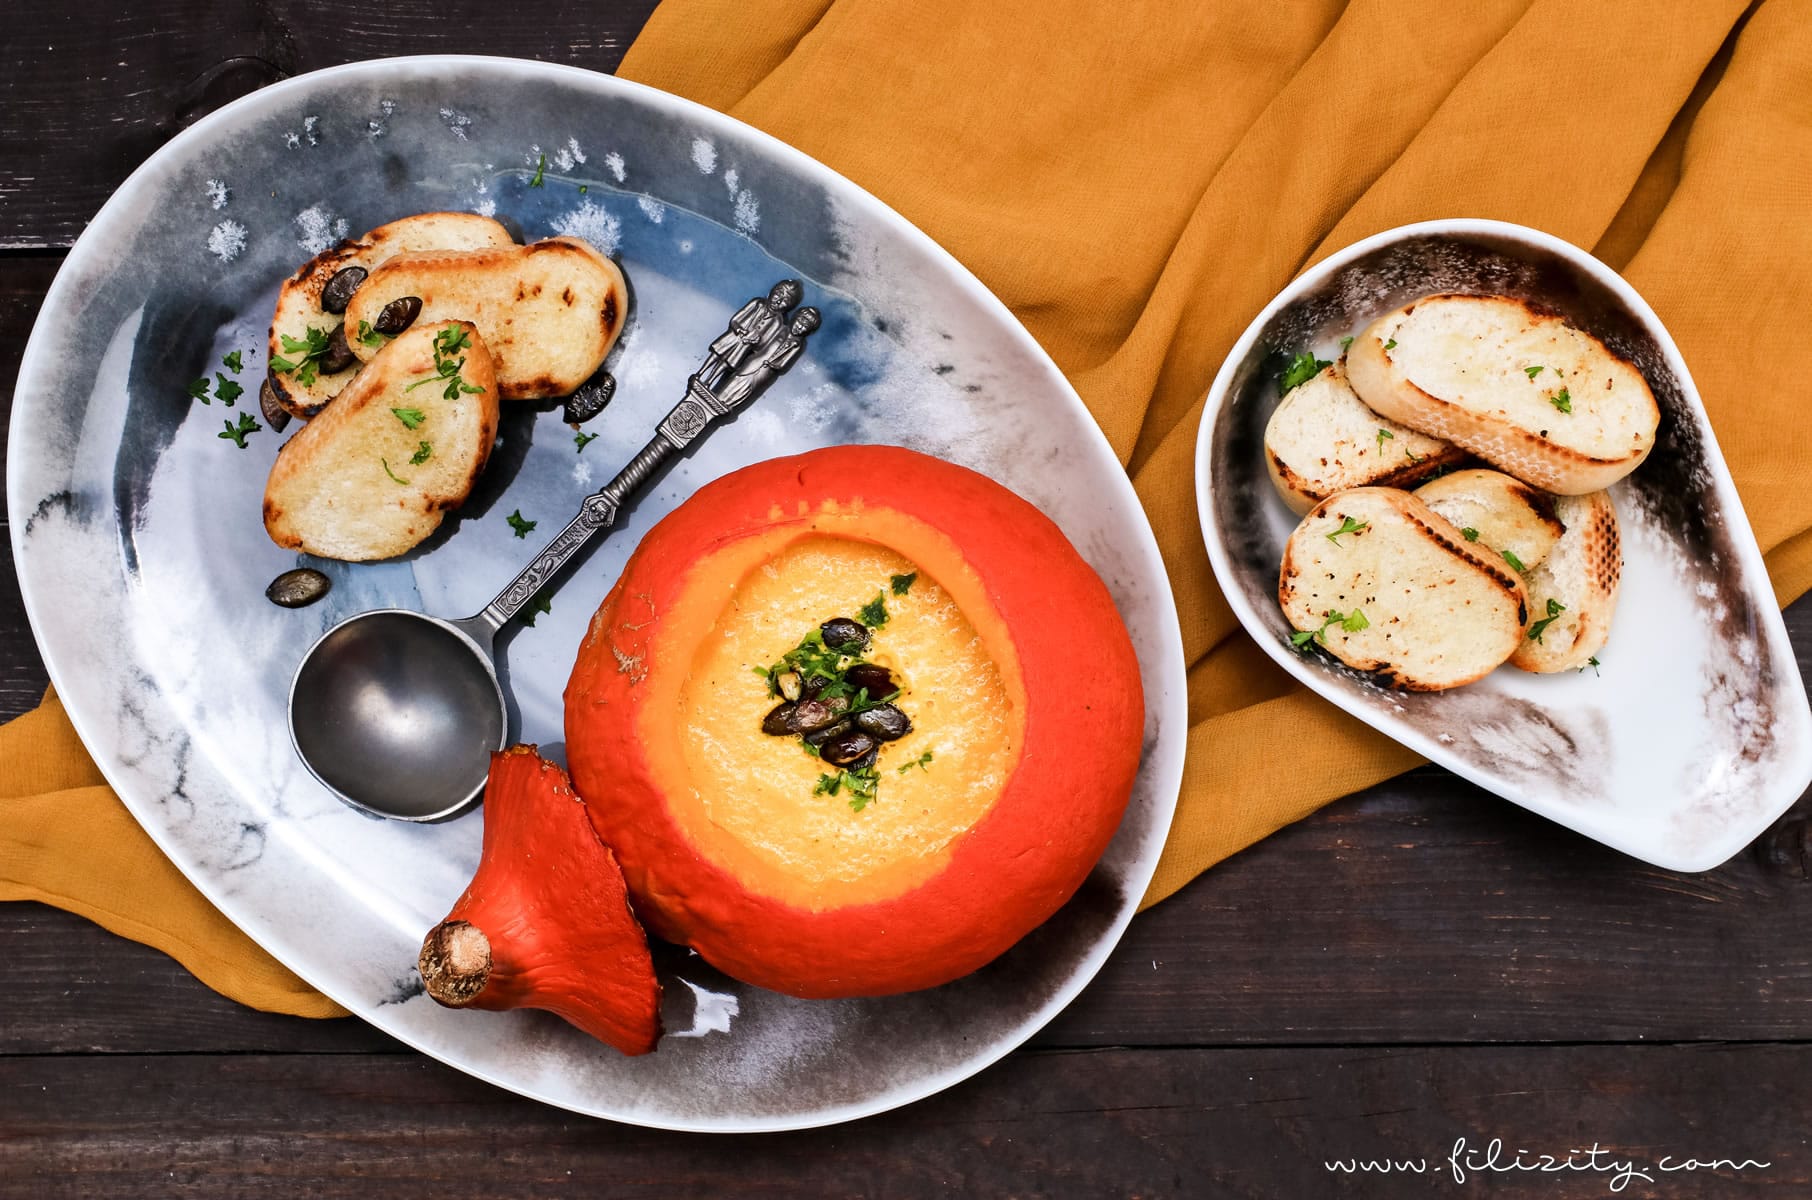 Herbst-Rezept: Kürbis-Suppe aus dem Ofen mit feinem Brie | Filizity.com | Food-Blog aus Koblenz #kürbis #herbst #suppe